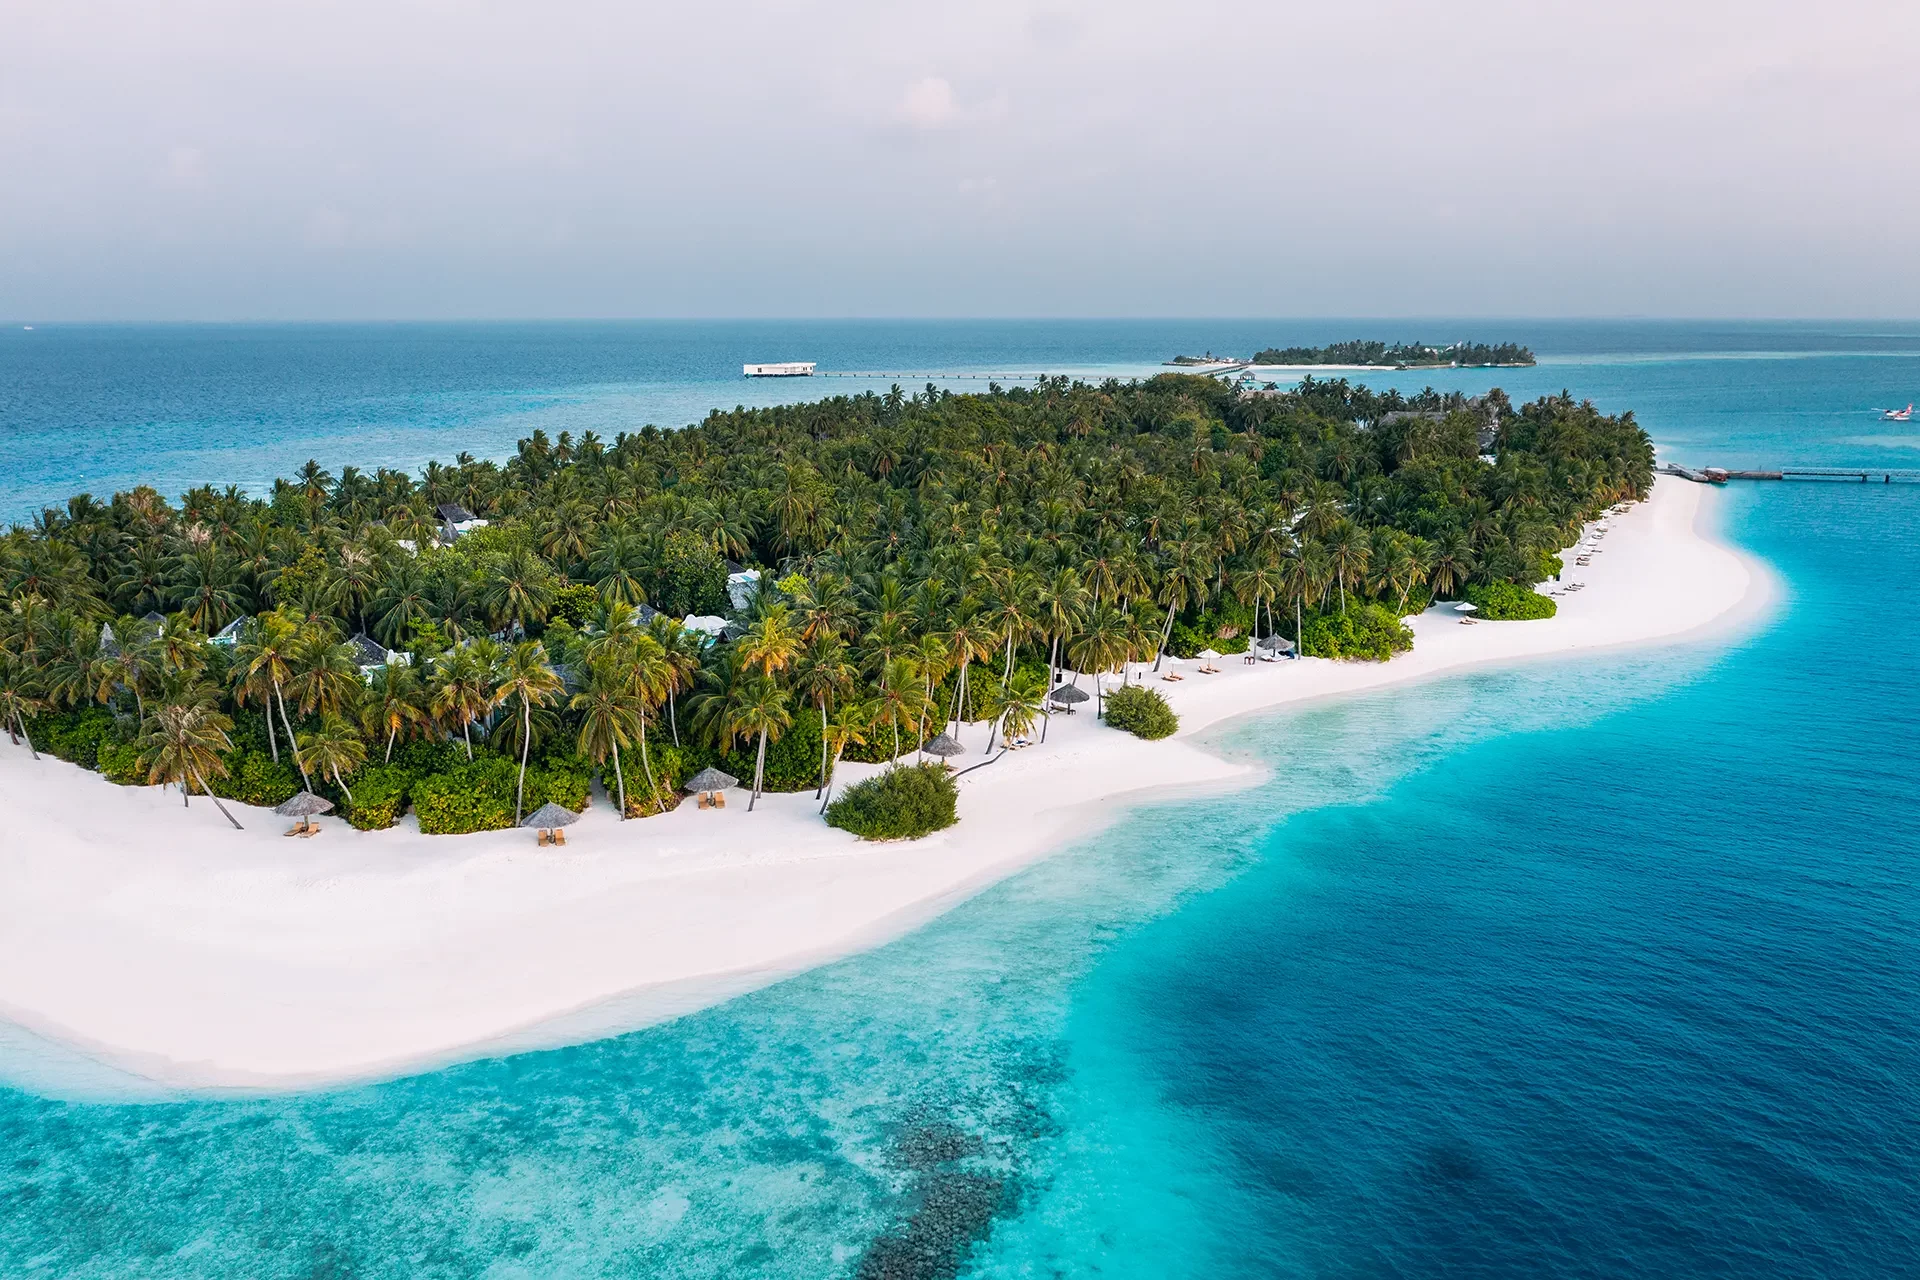 Maledivische Insel mit vielen Palmen